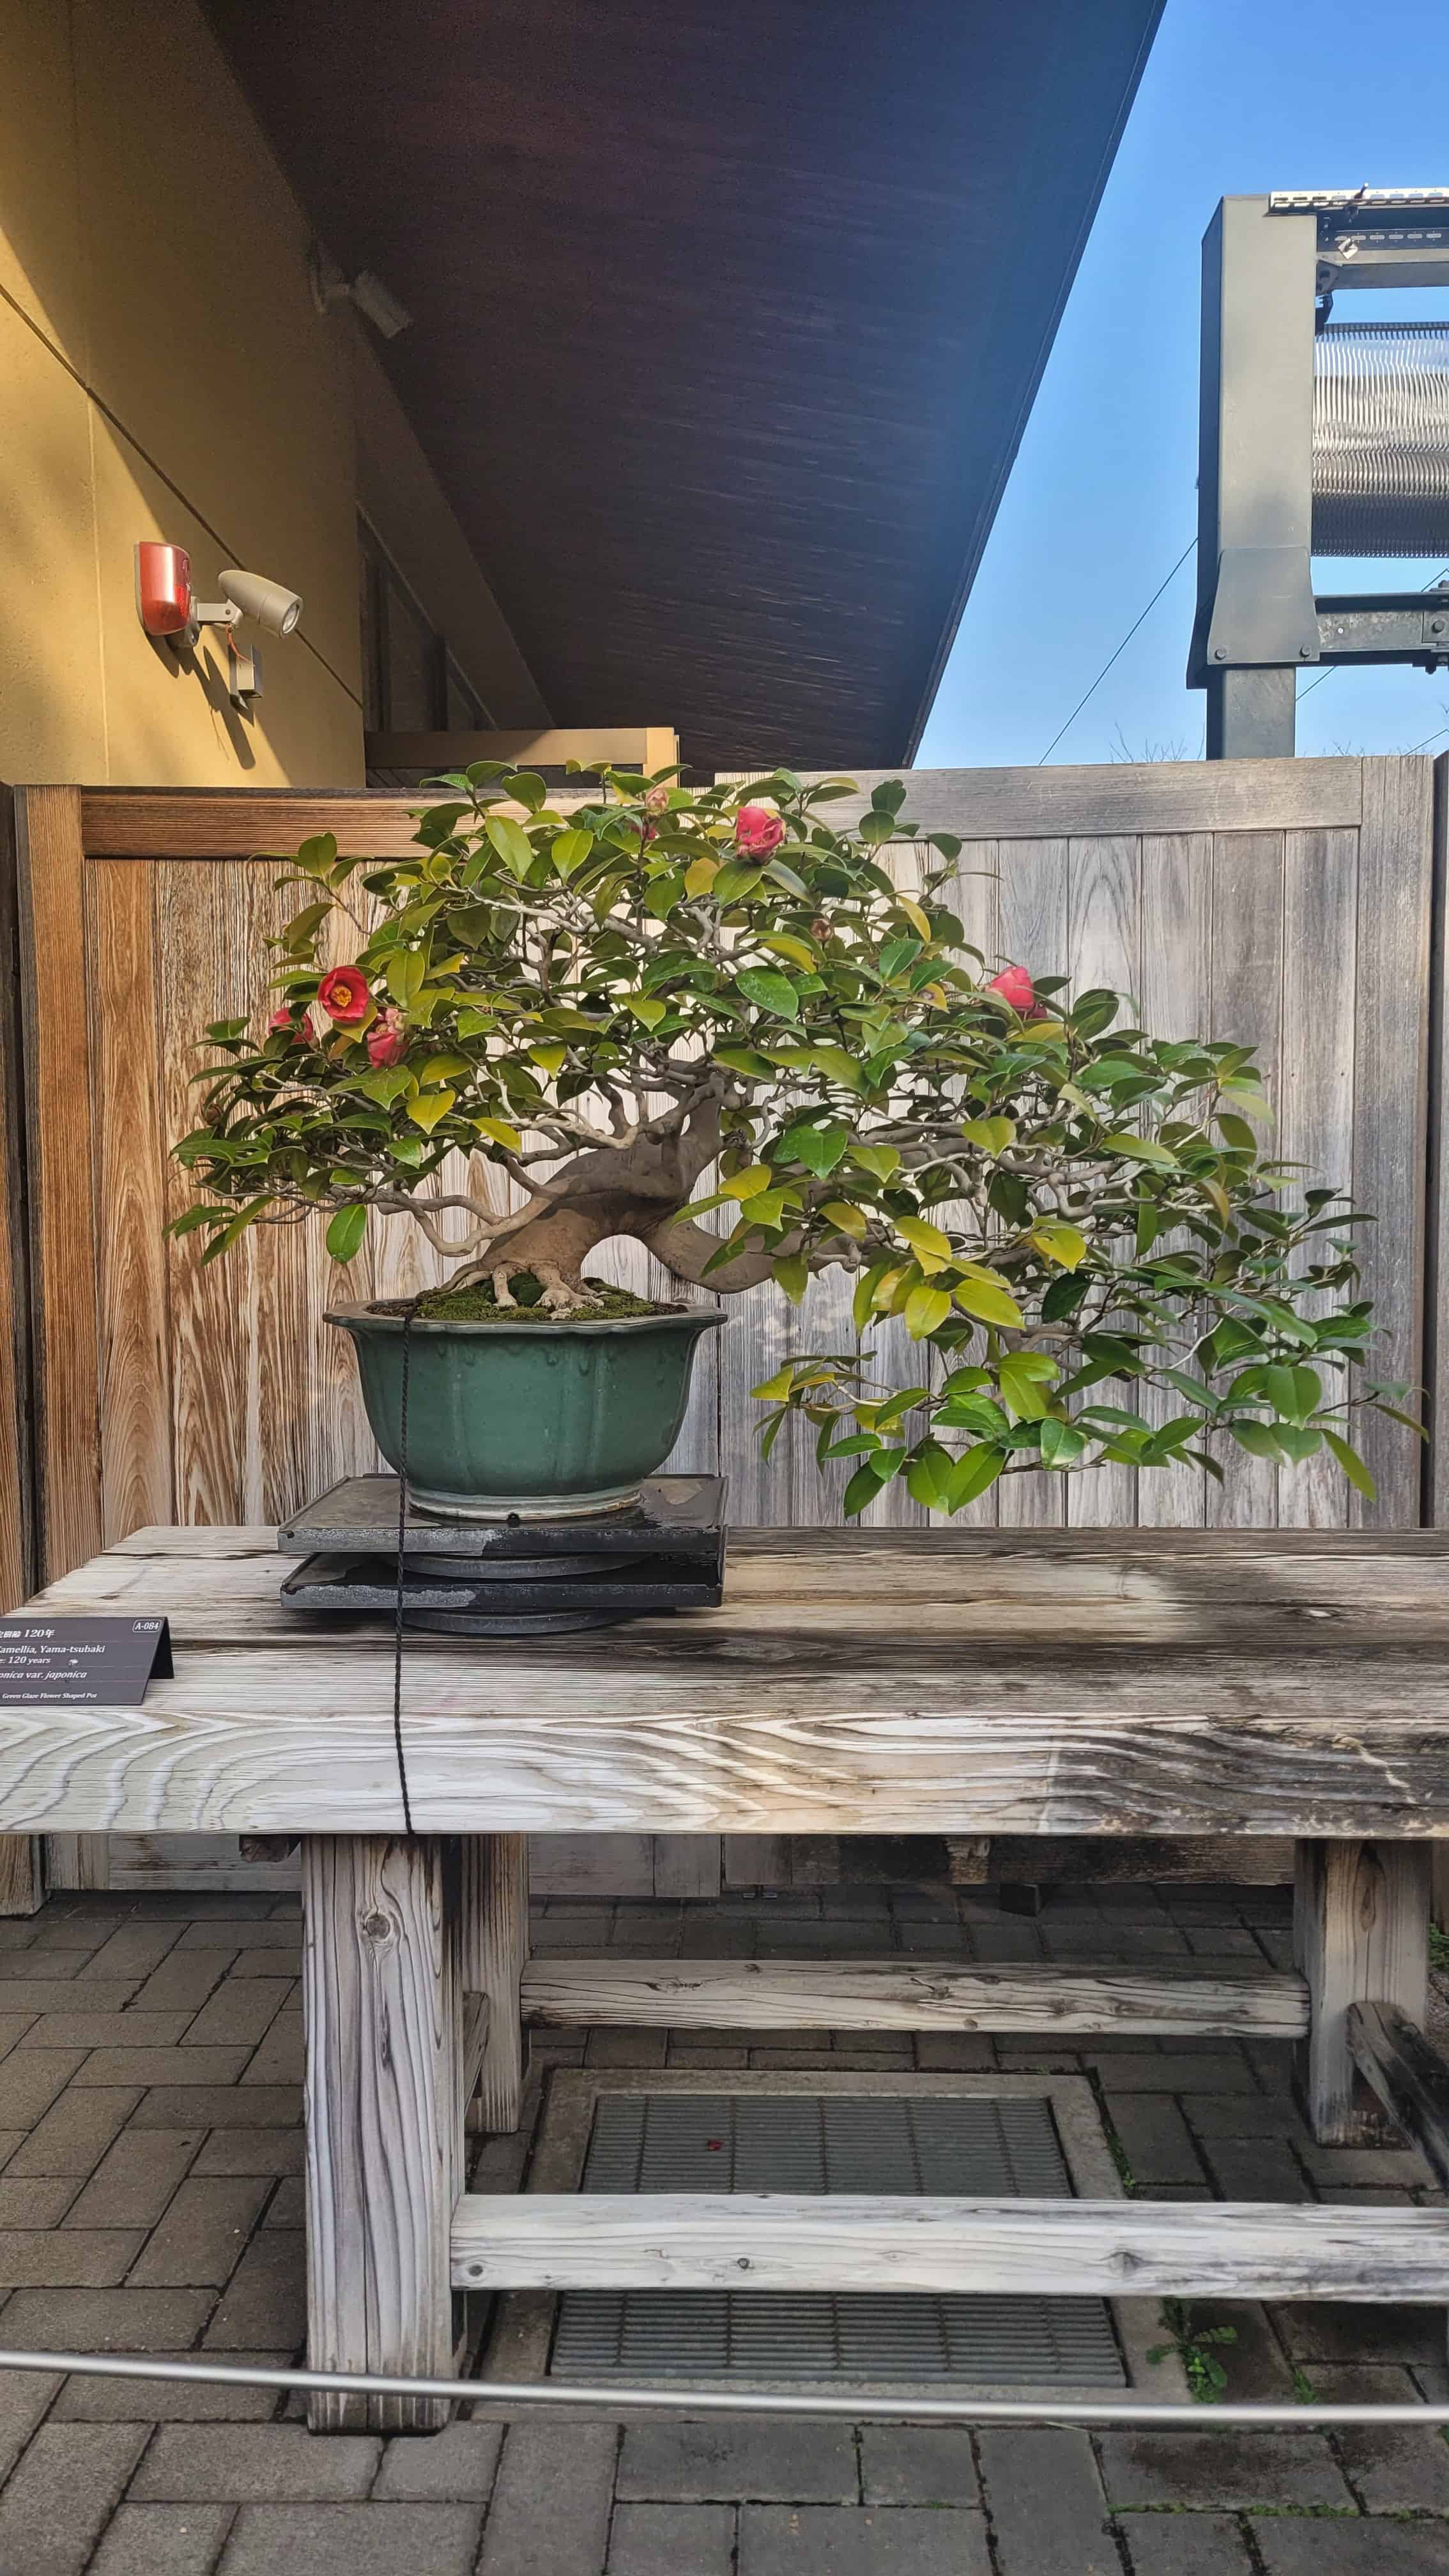 A flower bonsai tree from omiya museum in Japan